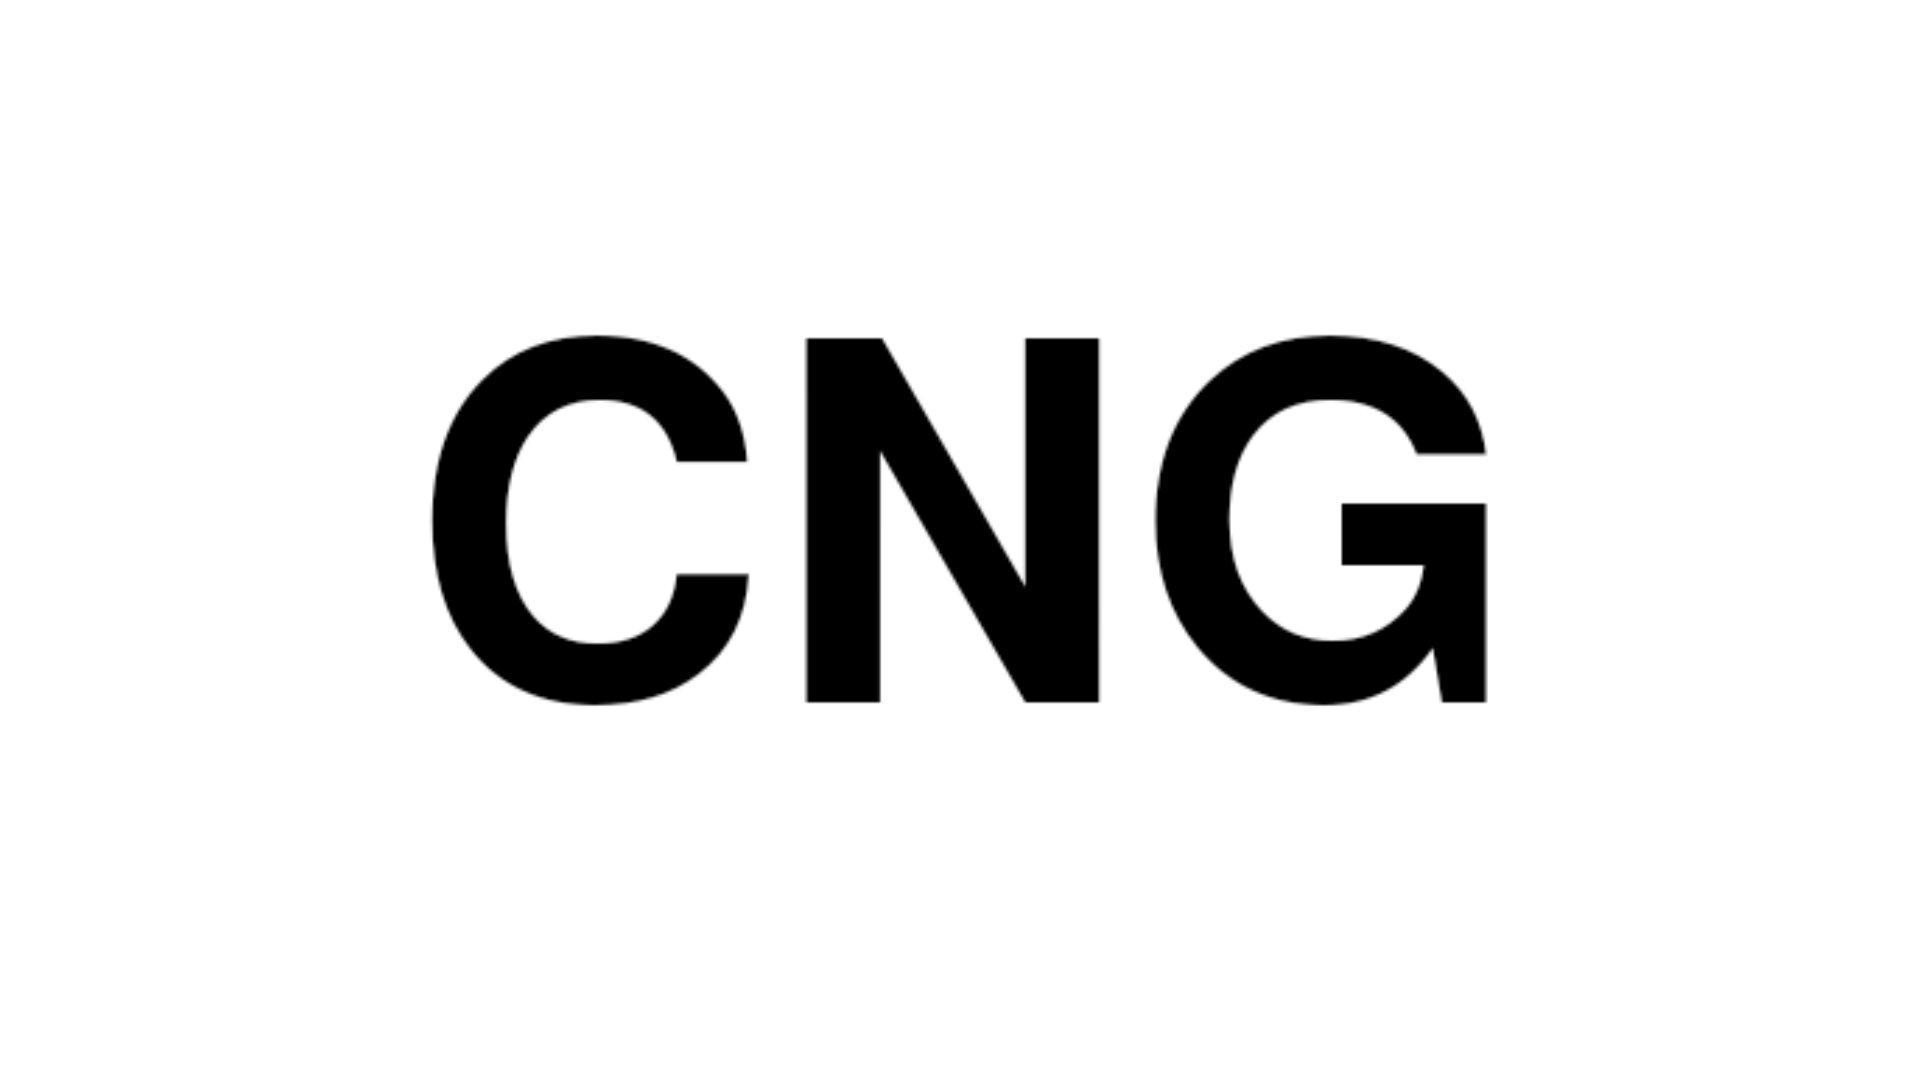 cng symbol